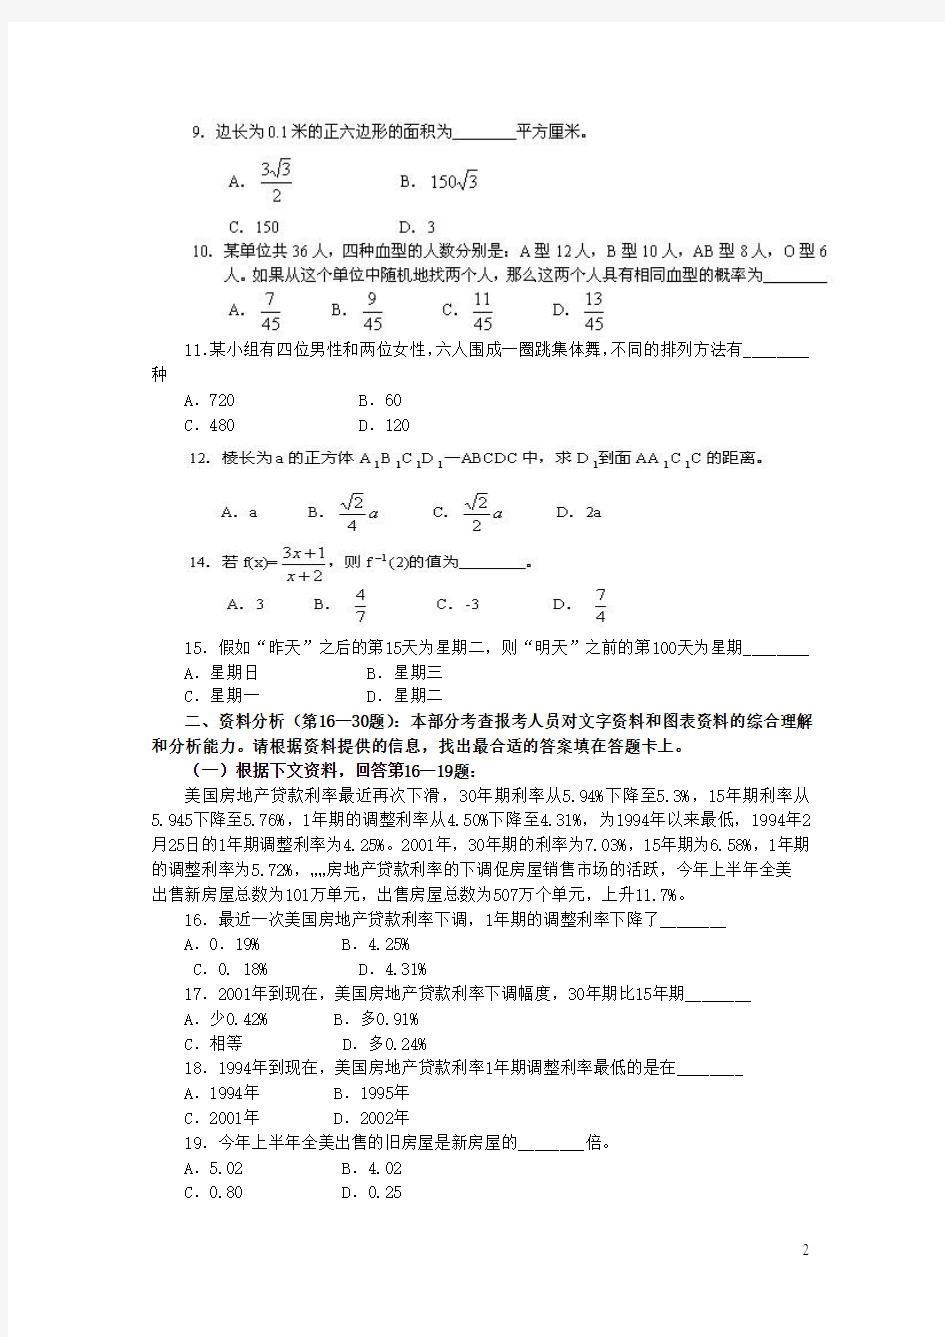 2003年上海市公务员考试行测真题及答案(清晰无水印版)